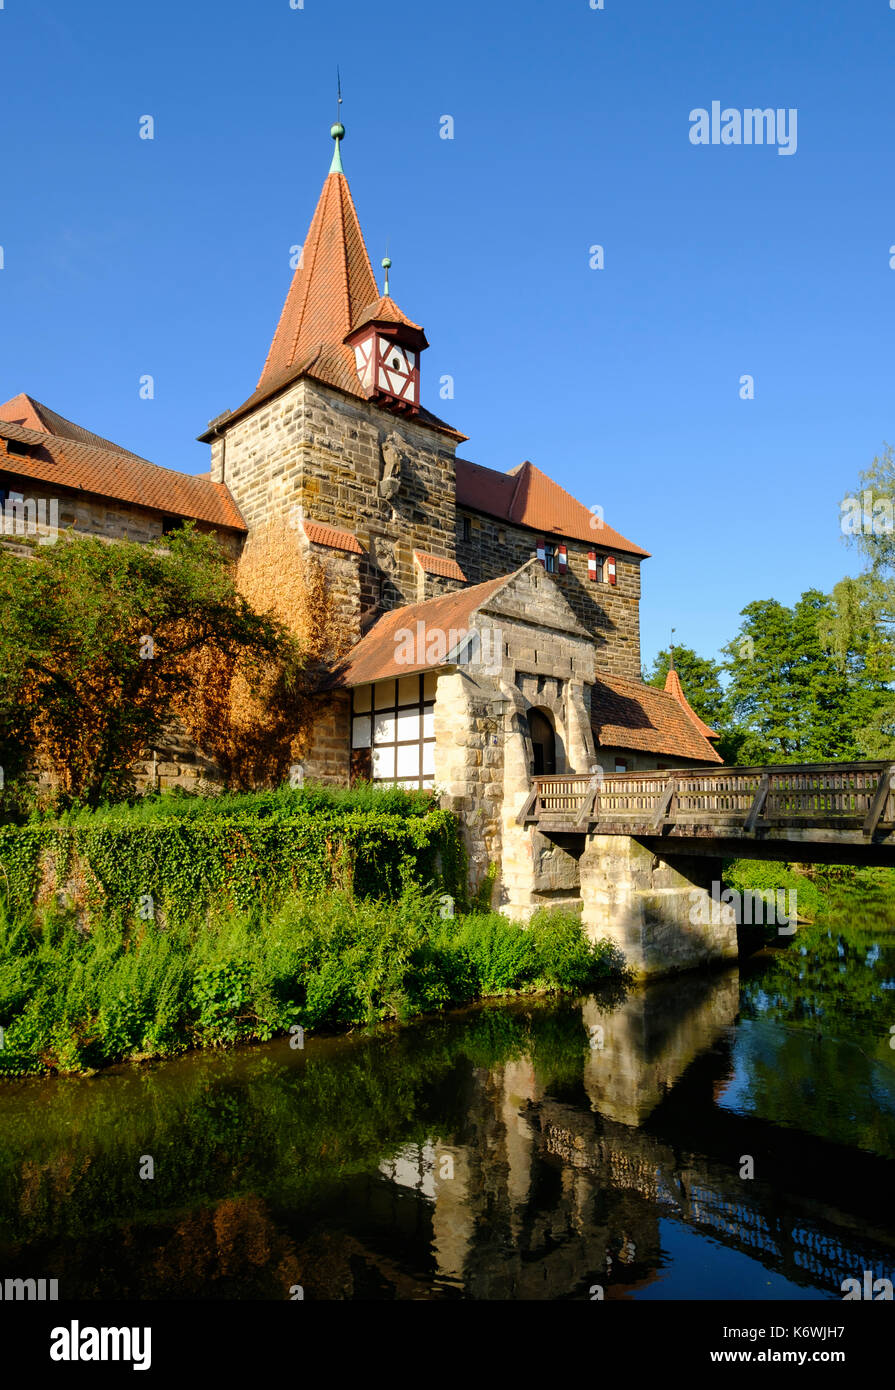 Lauf castello, del fiume Pegnitz, lauf in pegnitz, Media Franconia, Franconia, Baviera, Germania Foto Stock